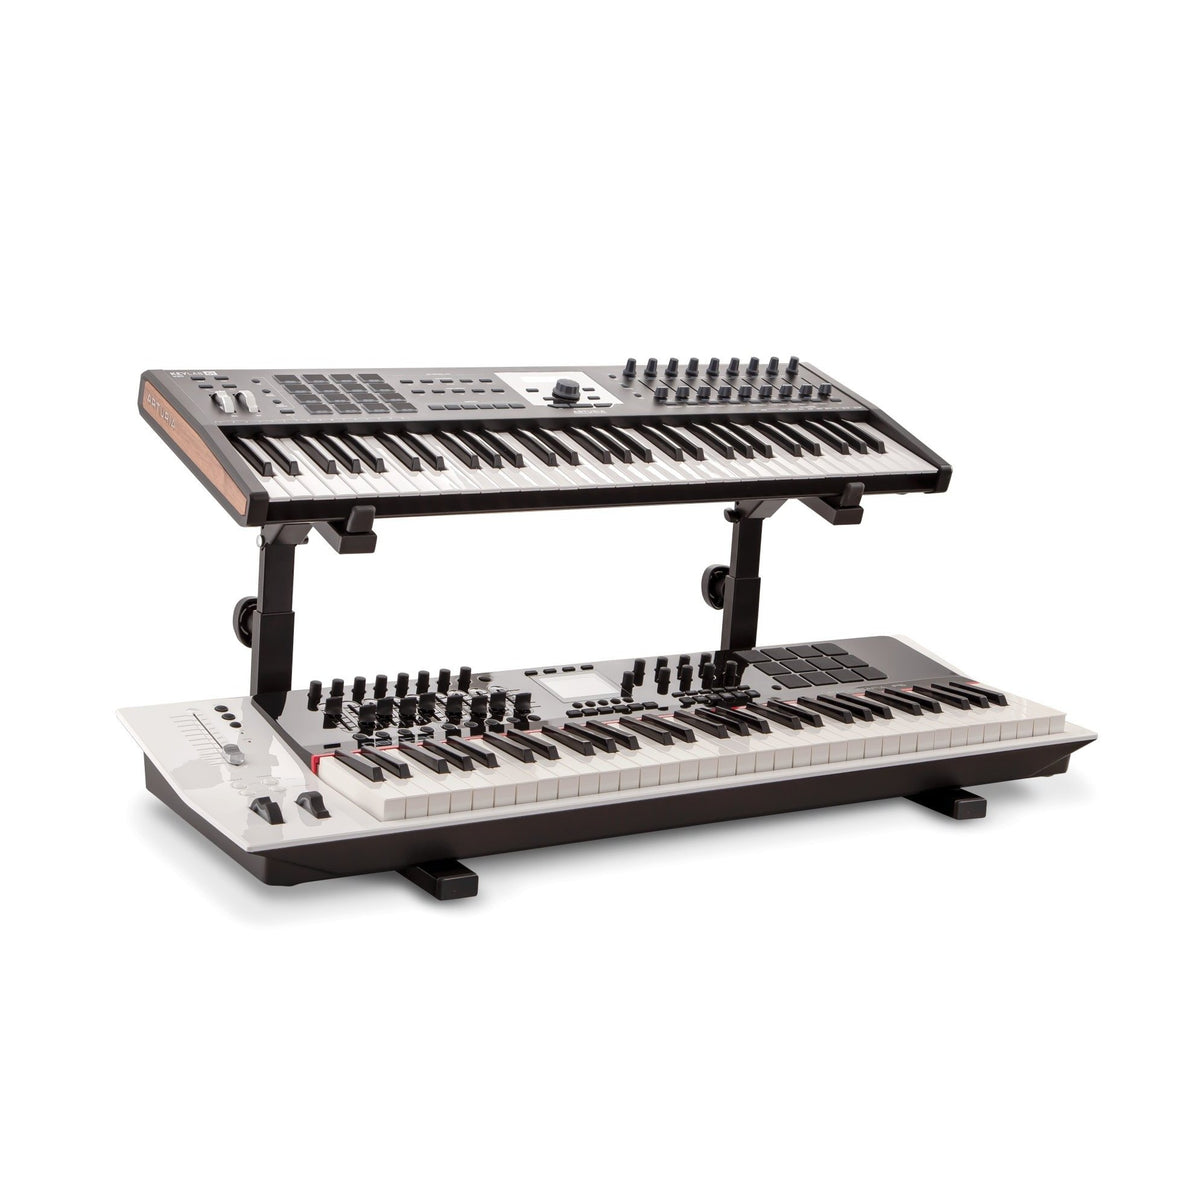 KÃ¶nig &amp; Meyer - 18828 Basic Support for &lt;Omega&gt; Keyboard Table Stand-Instrument Stand-KÃ¶nig &amp; Meyer-Music Elements